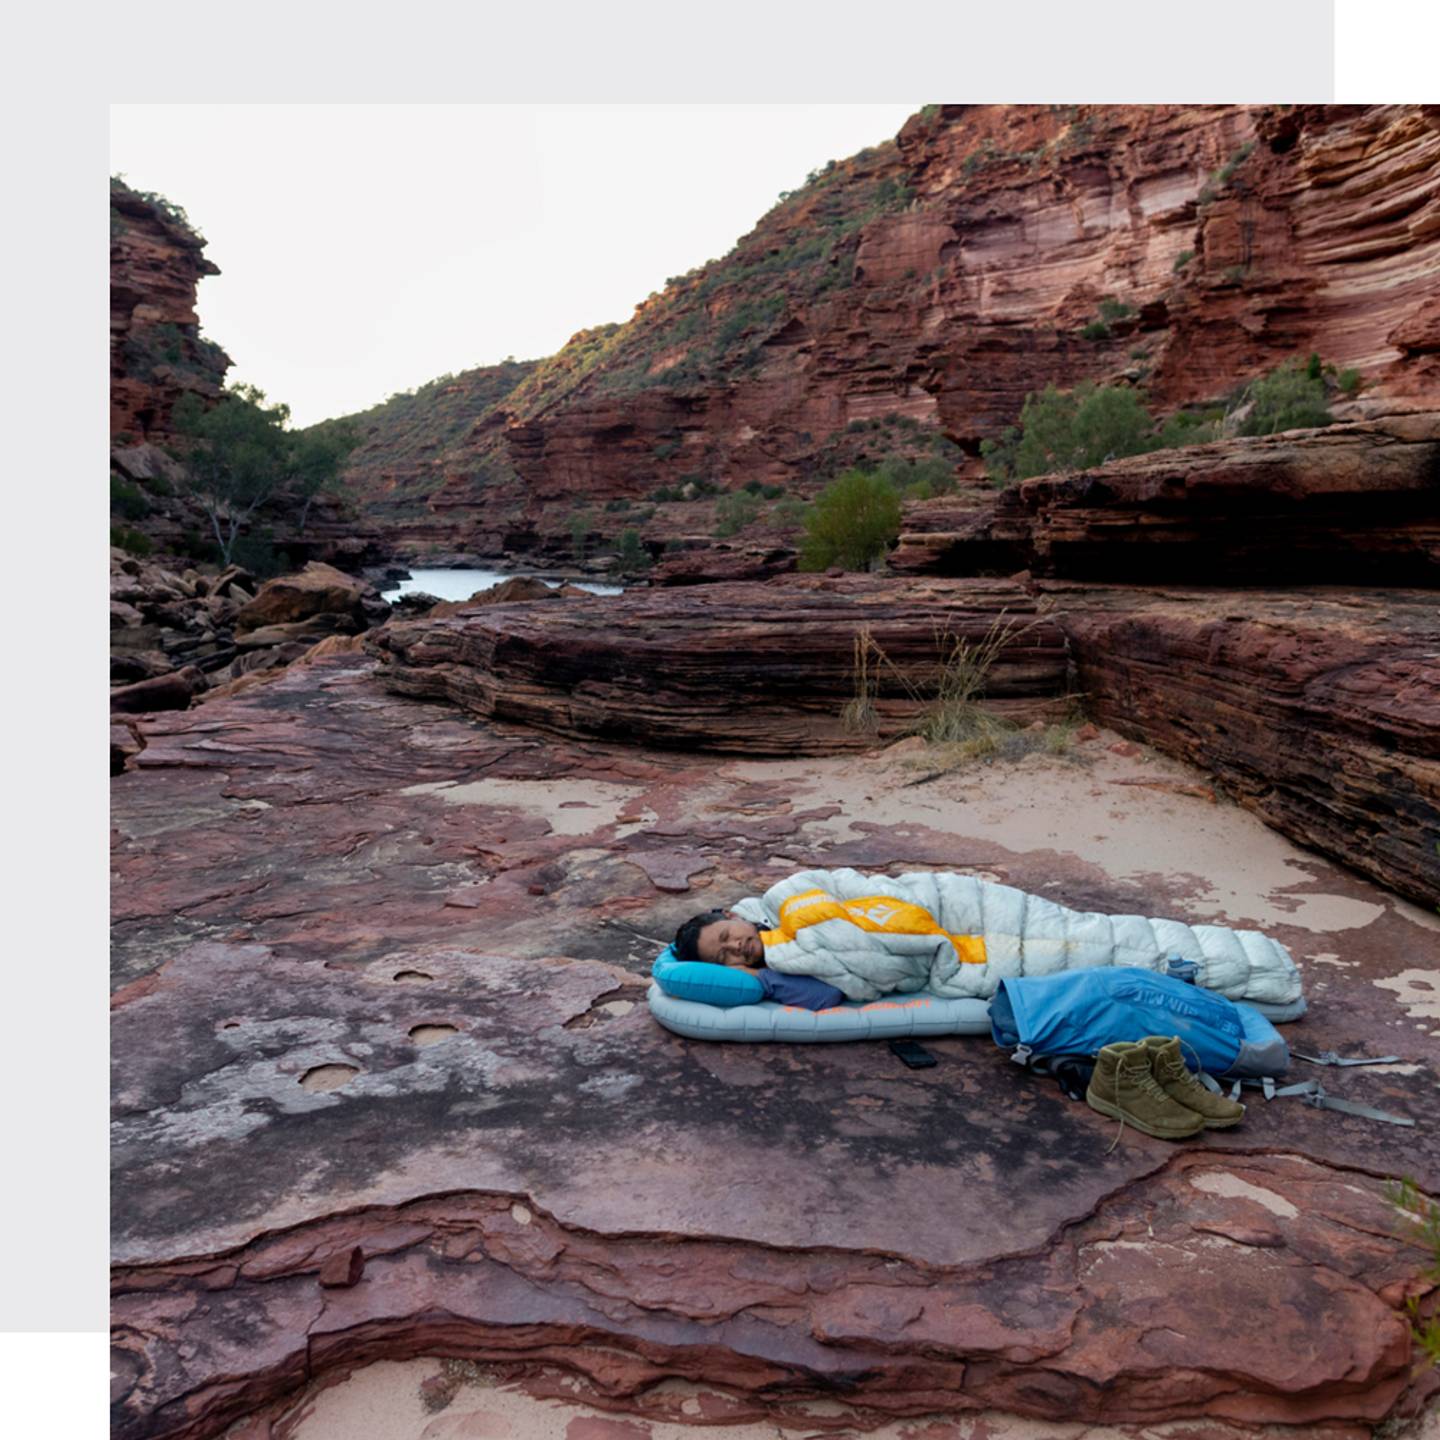 Un homme dormant dans son sac de couchage sur un matelas sur un sol rocailleux dans un canyon australien à la fin d'une journée épuisante.